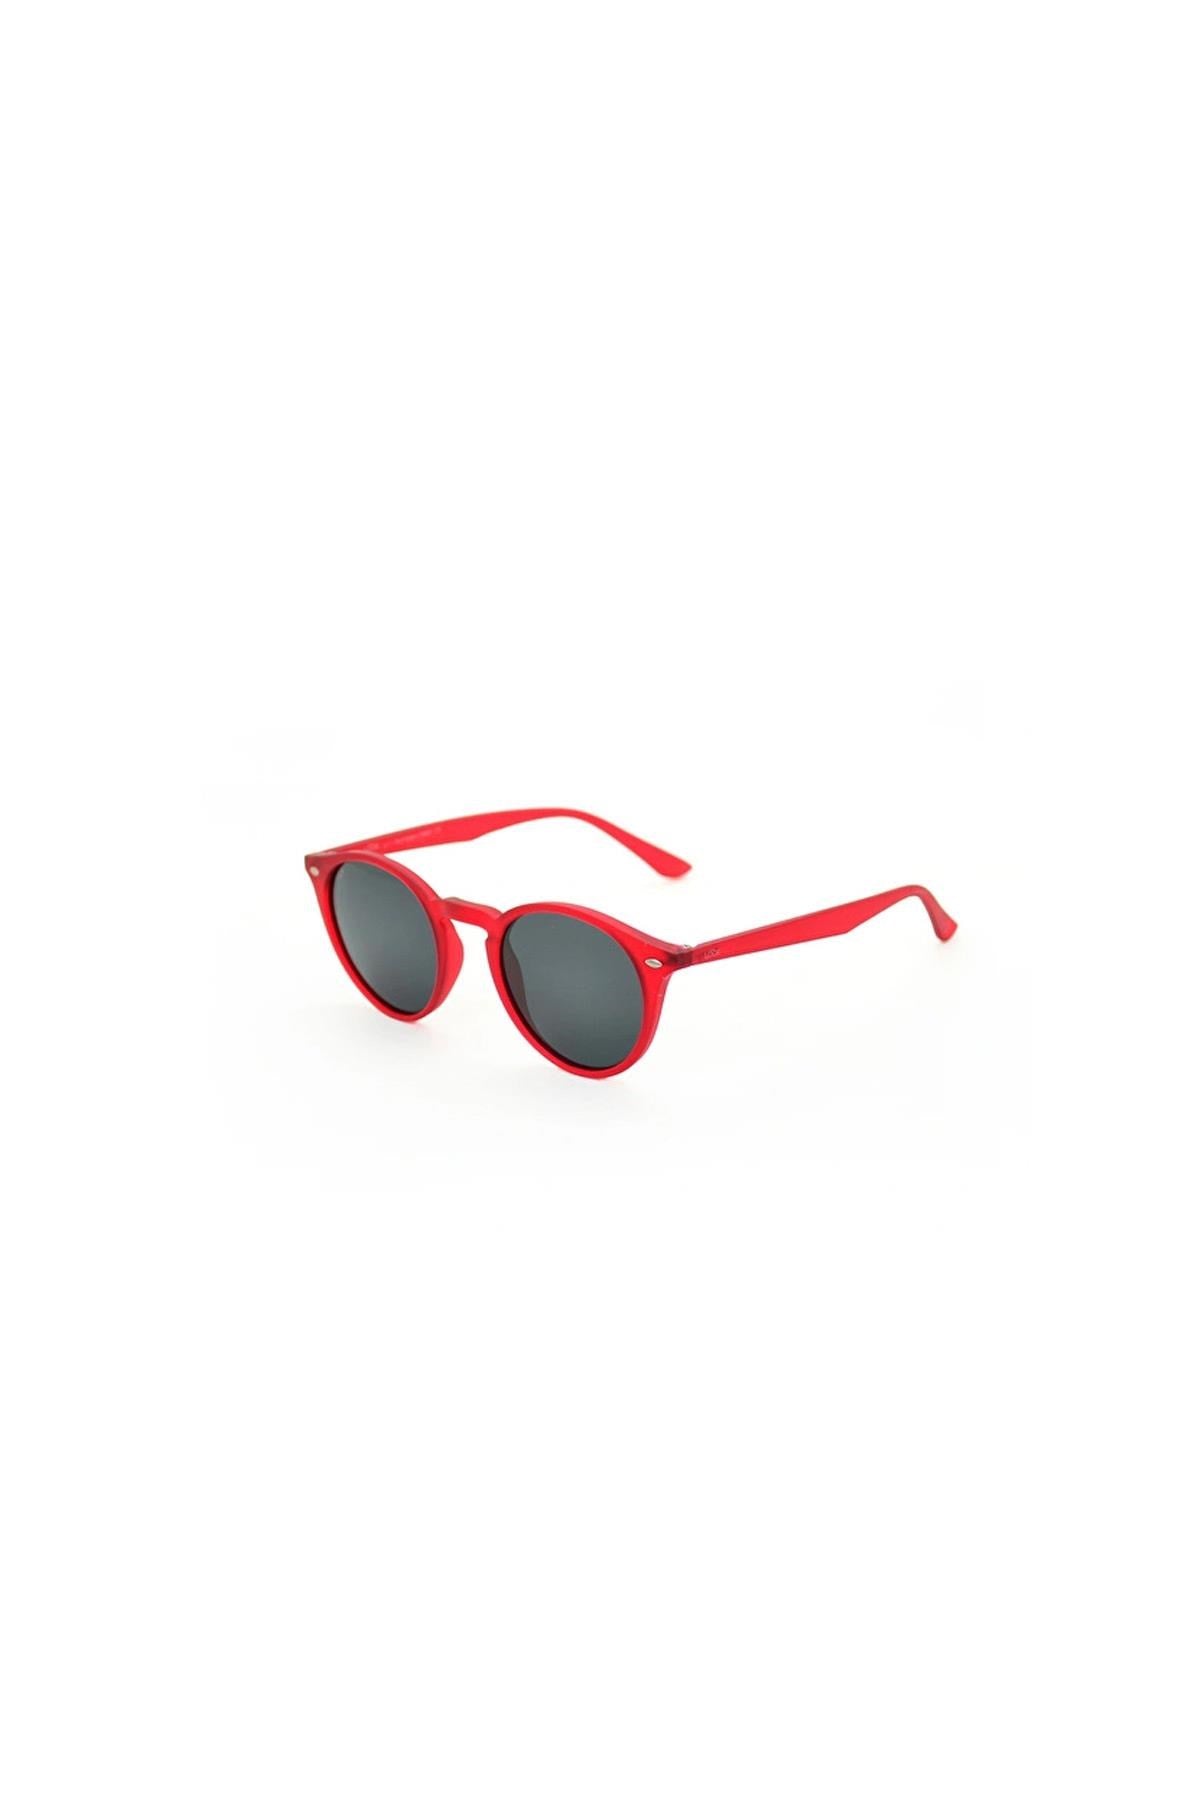 Looklight Letoon S-size Matte Jelly Red Smoke Yetişkin Güneş Gözlüğü